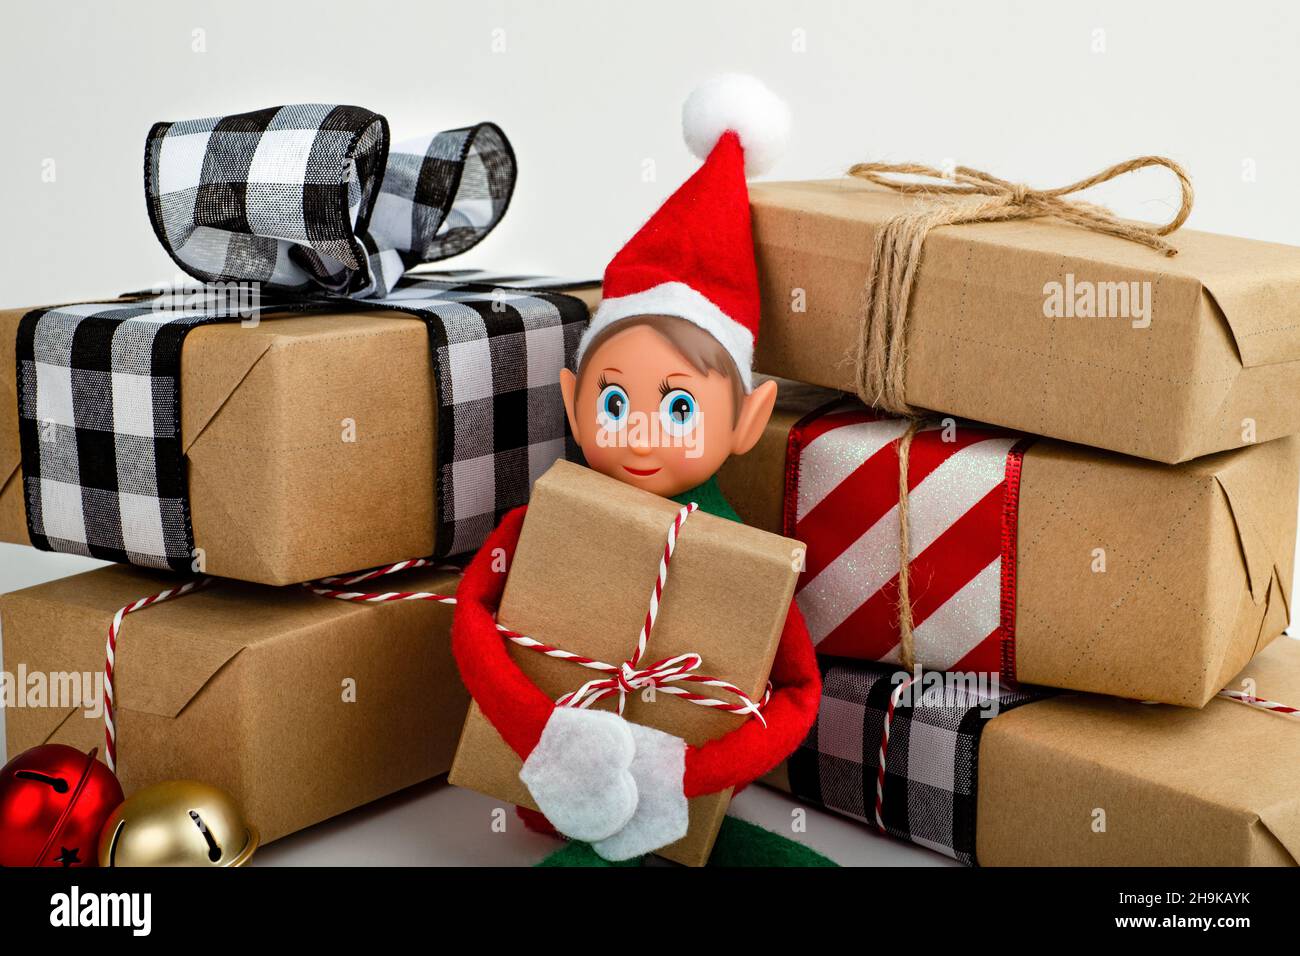 Gros plan d'un Elf de Noël assis dans une pile de boîtes-cadeaux esprit de Noël, la tradition familiale de Noël. Banque D'Images